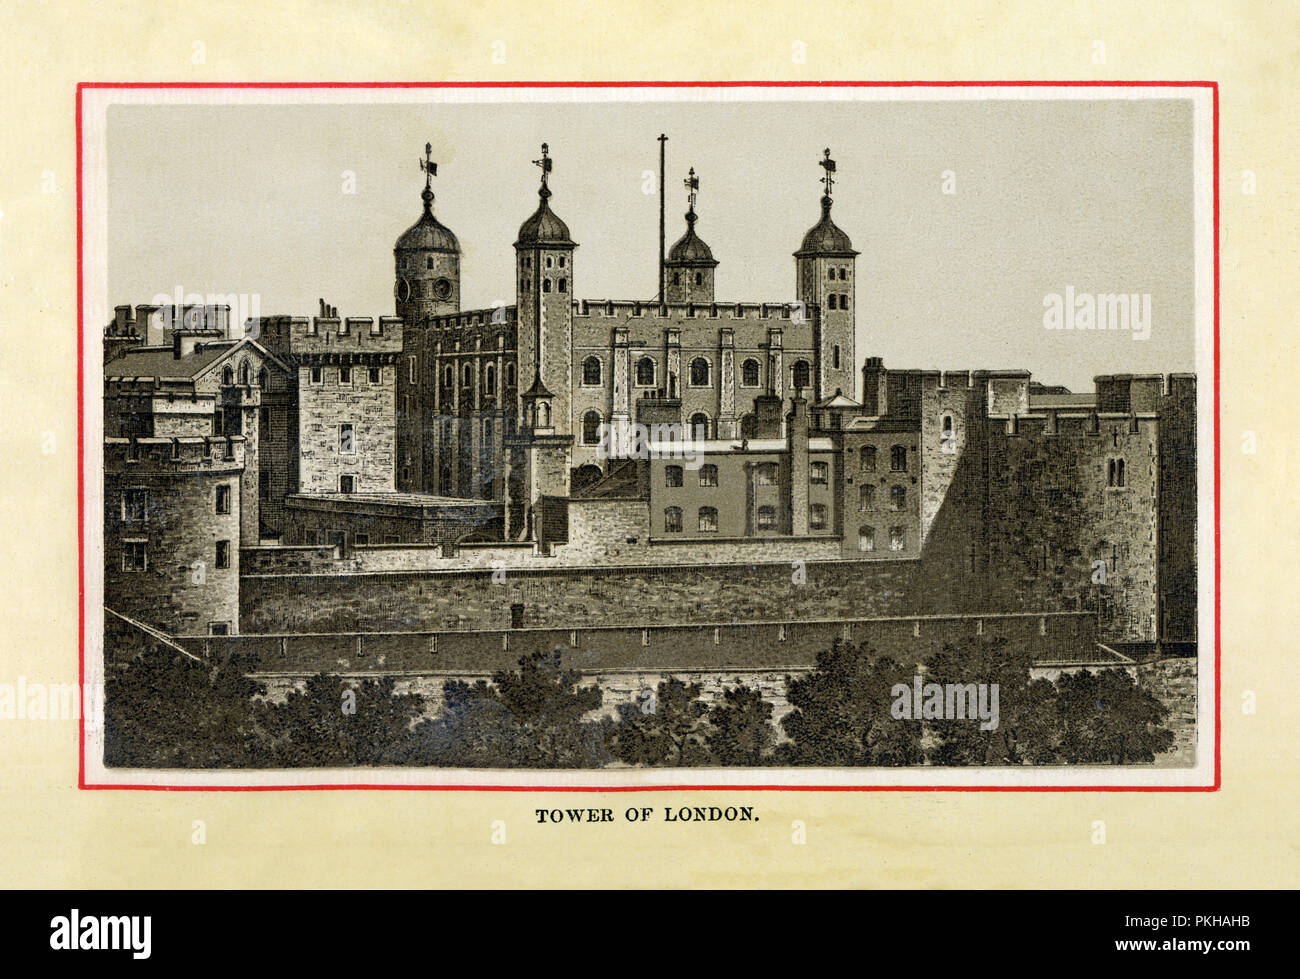 La Tour de Londres, 1880 gravure sur acier de haute qualité du château dont le donjon central, la Tour Blanche, a été construite par Guillaume le Conquérant après son succès de l'invasion de l'Angleterre en 1066 Banque D'Images